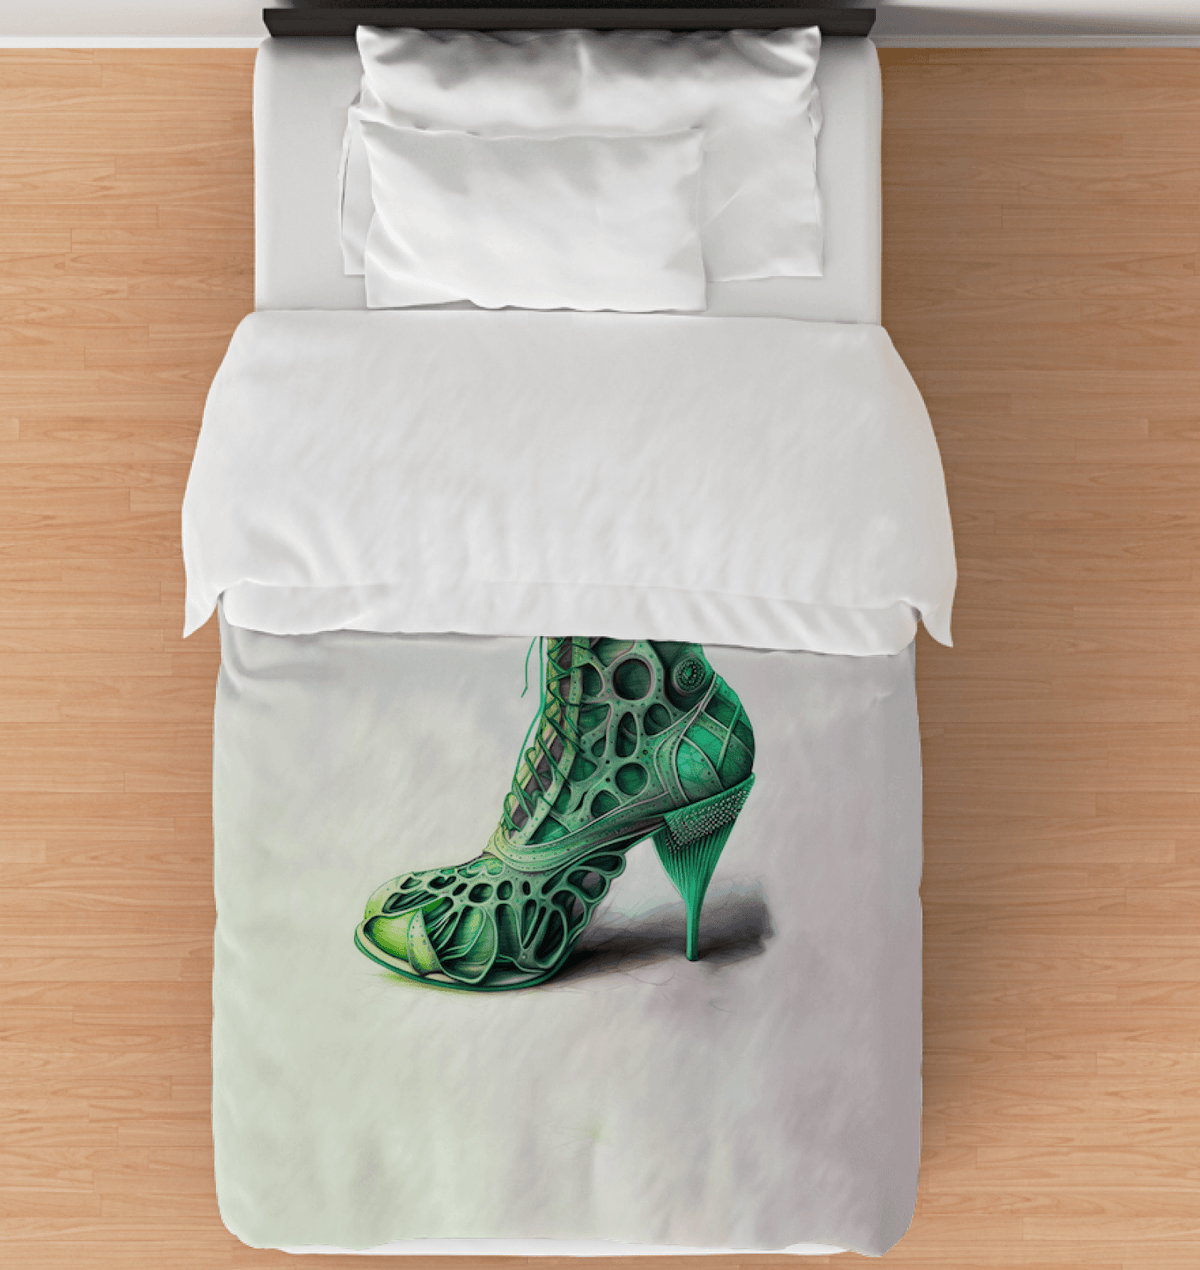 Futuristic Shoe Comforter Escape - Beyond T-shirts